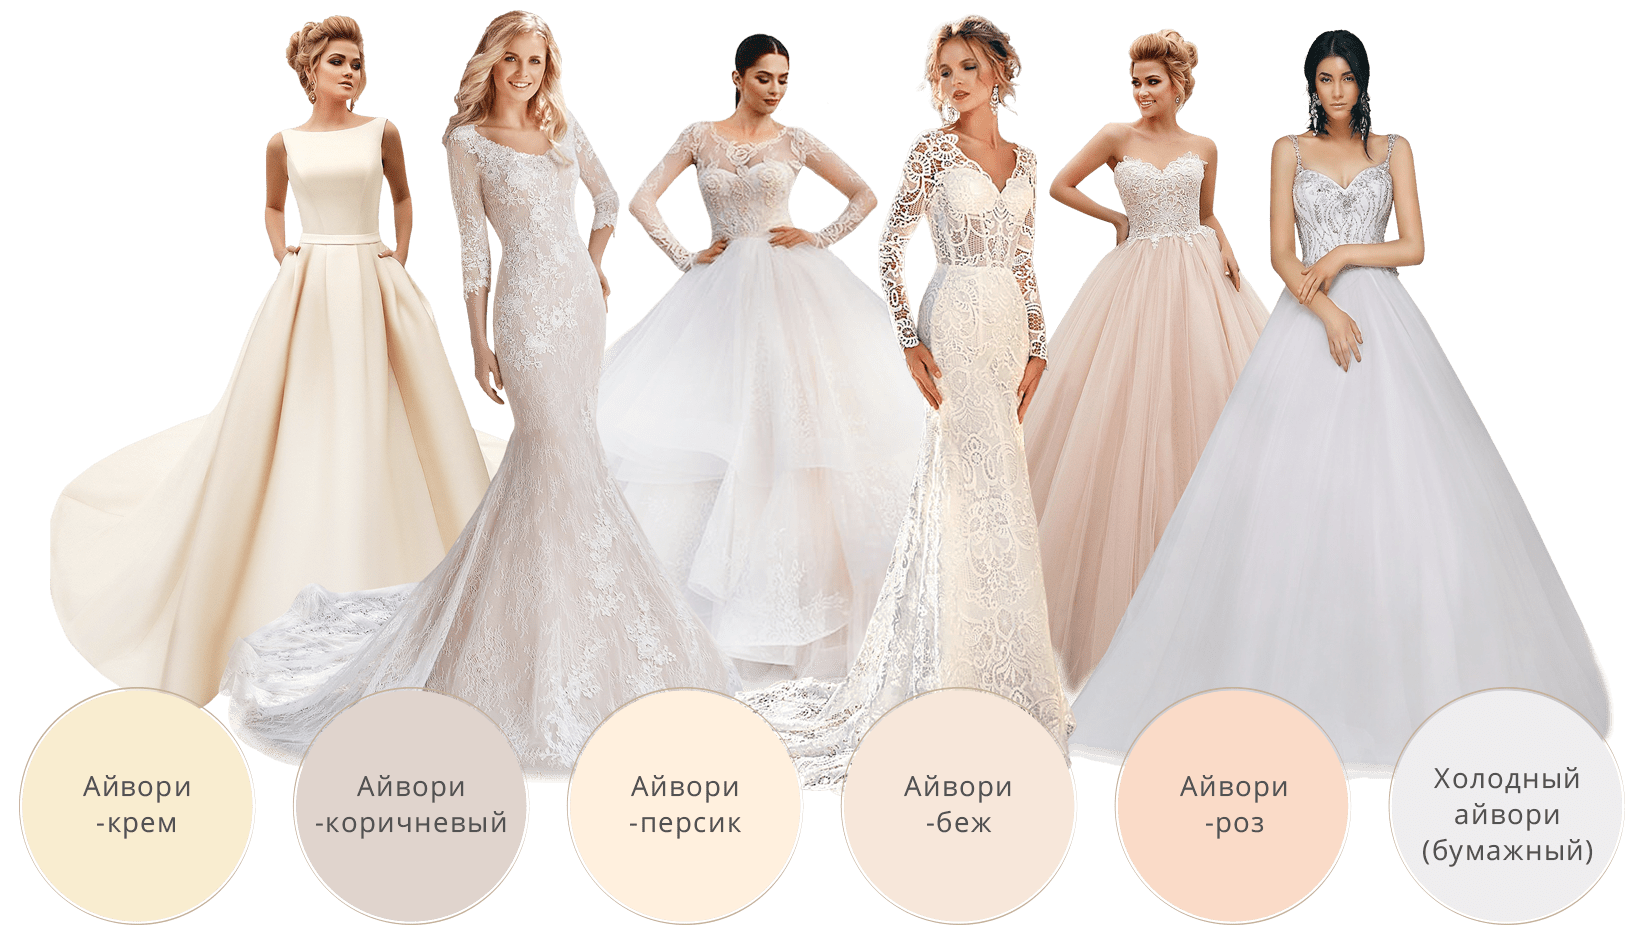 Свадебные платья для полных девушек - фото, модные тенденции 2018, недорогие